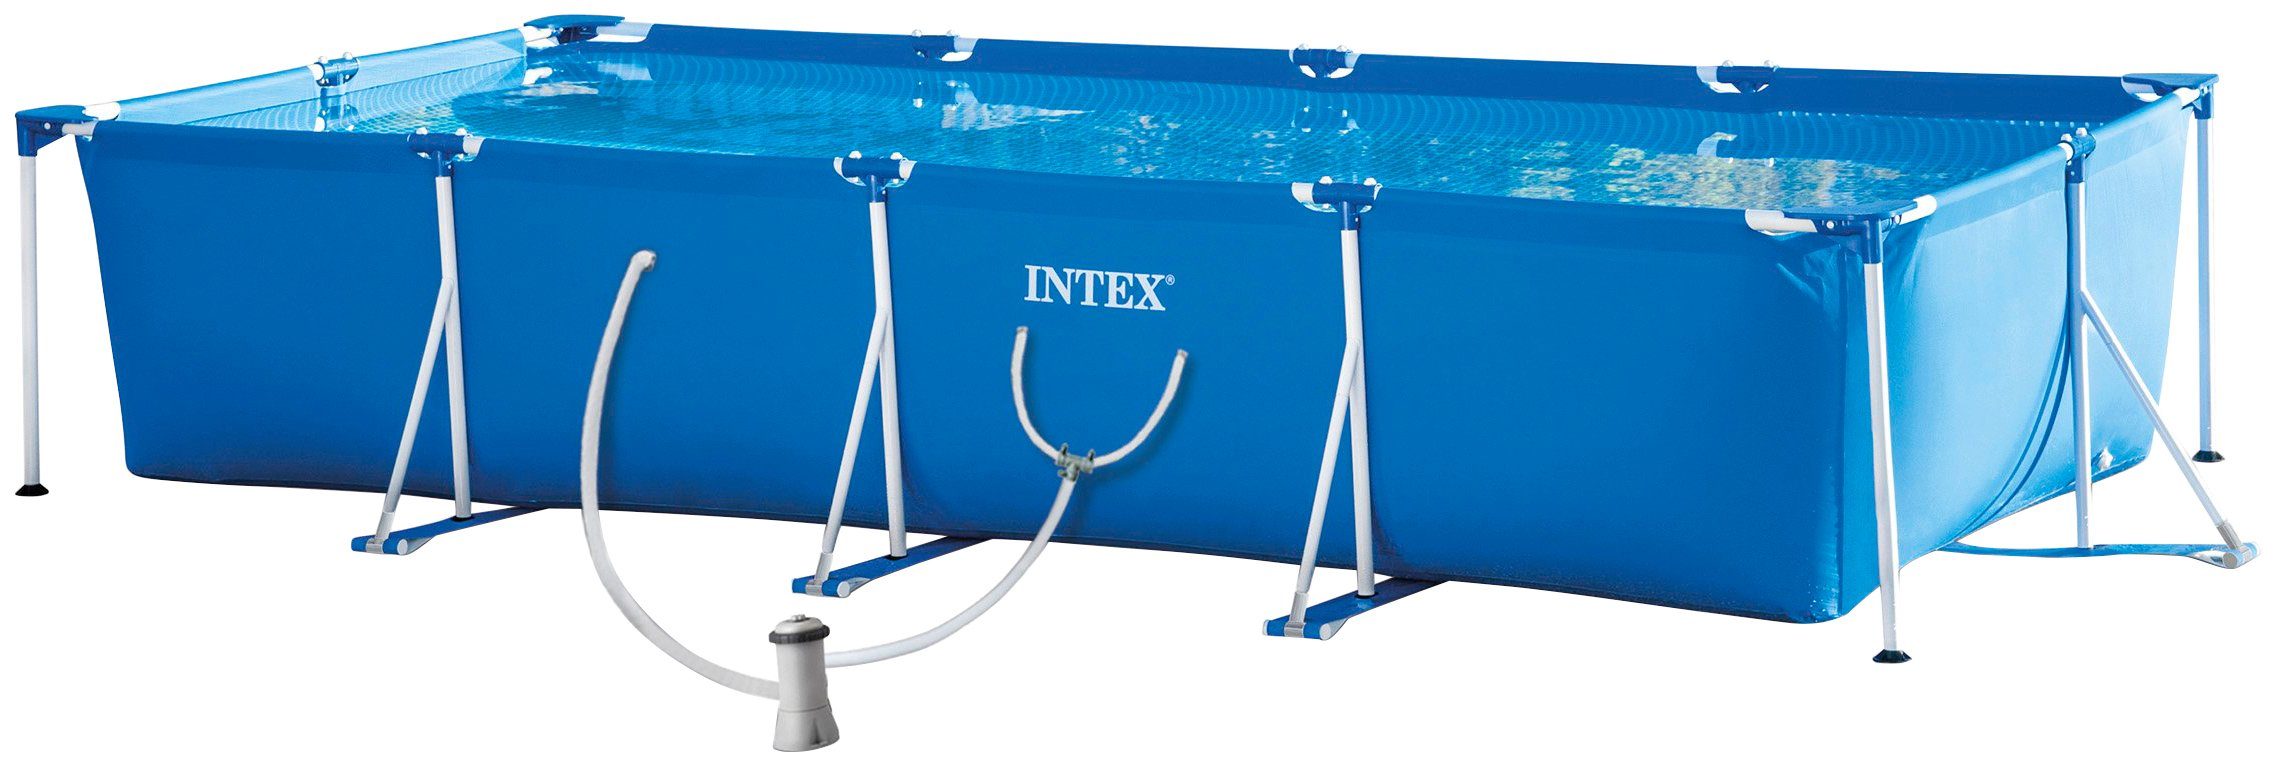 Intex opzetzwembad rechthoek 450 x 220 x 84 cm staal-pvc blauw